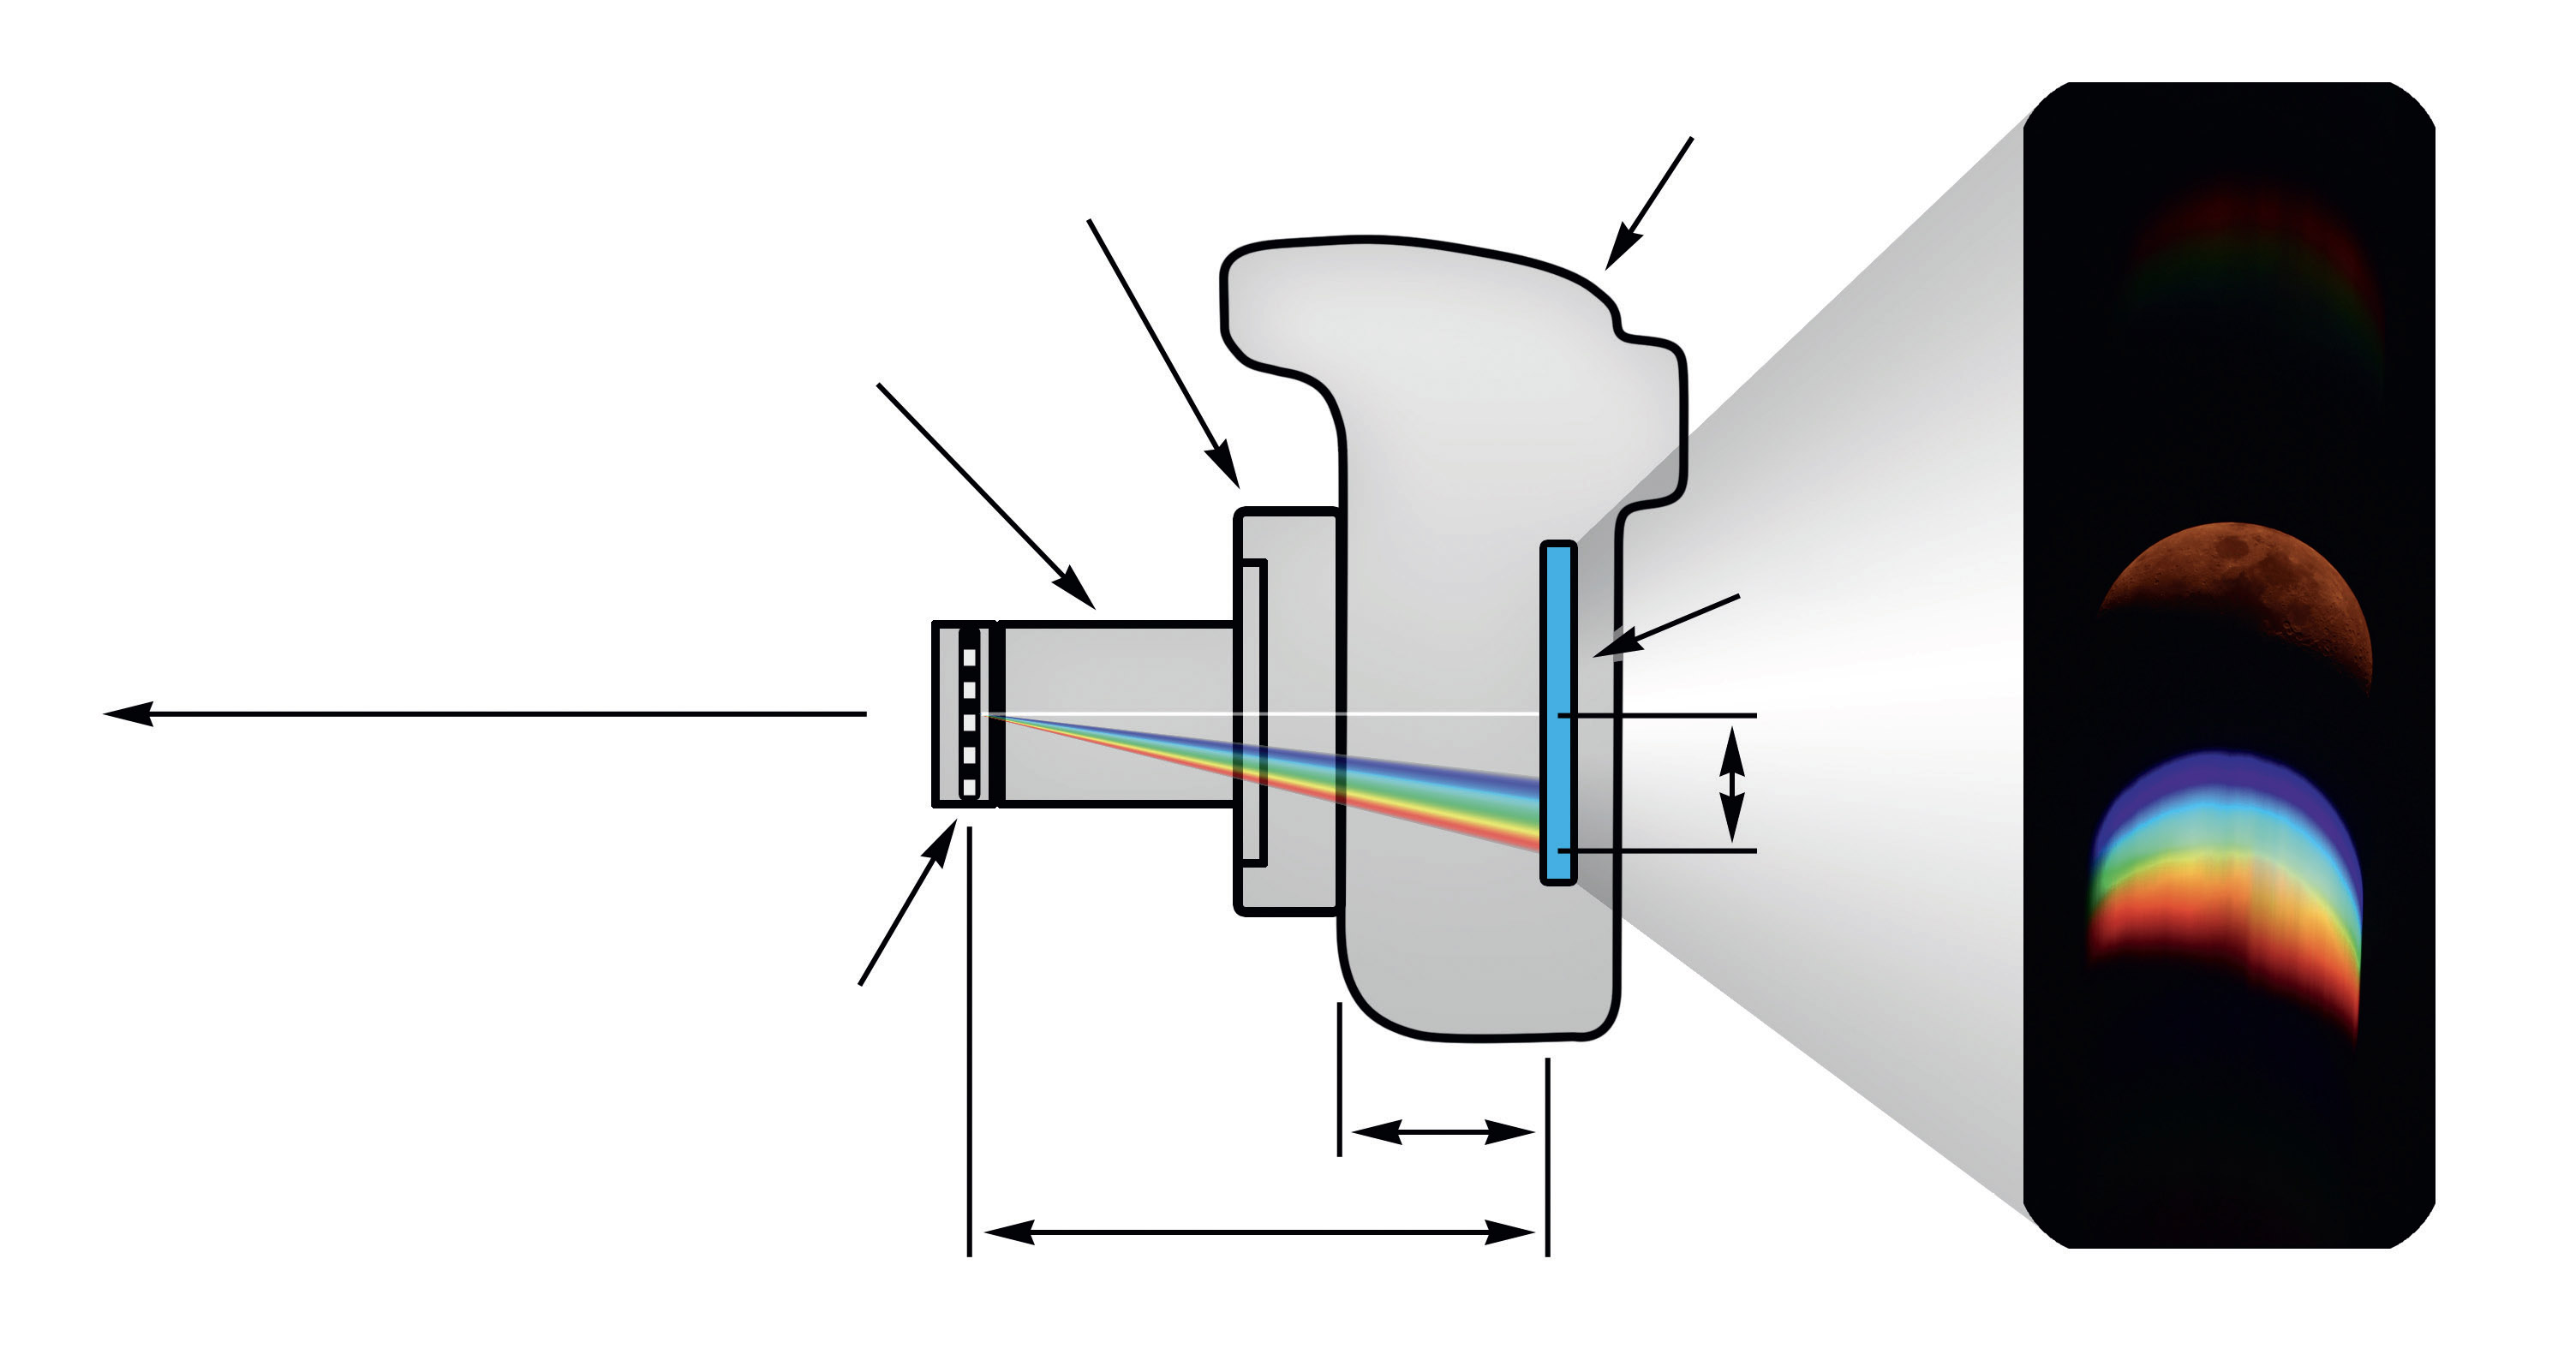 Konfiguration zur Aufnahme eines Flash-Spektrums bestehend aus Gitter, 1,25" Adapter, T-Ring und DSLR. Distanz A ist das Auflagemaß
der jeweiligen Kamera, d der Abstand zwischen Gitter und Sensor und x der Abstand der 0. und 1. Ordnung. Rechts ein Beispiel anhand des Mondes. M.Weigand